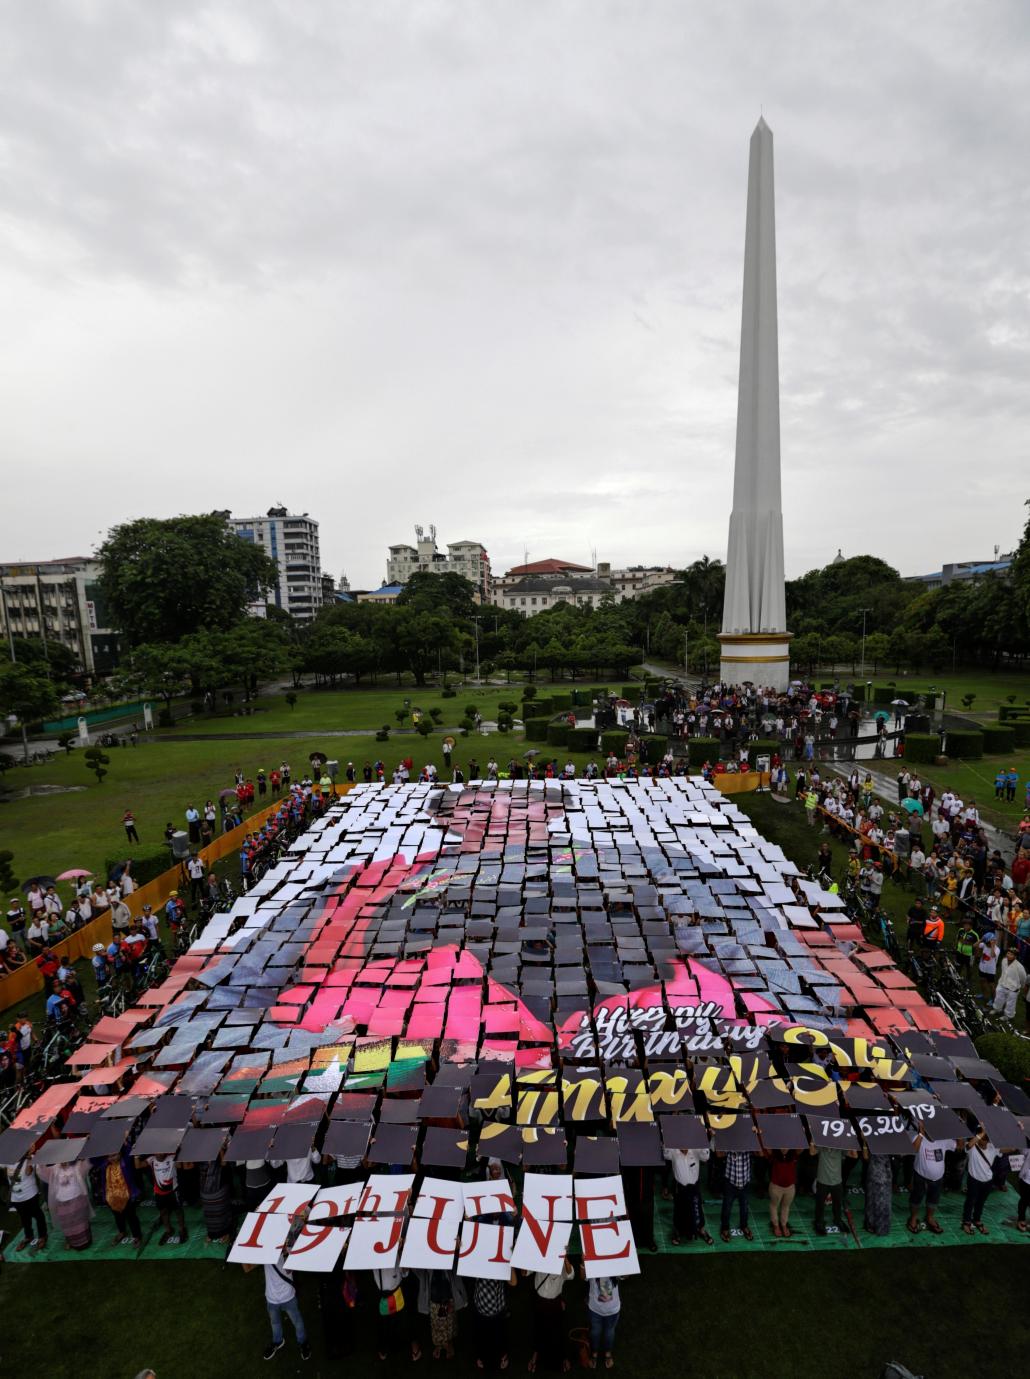 ရန်ကုန်မြို့ မဟာဗန္ဓုလပန်းခြံ၌ လူပေါင်း ၇၄၀ က နိုင်ငံတော်၏ အတိုင်ပင်ခံပုဂ္ဂိုလ် ဒေါ်အောင်ဆန်းစုကြည် ရုပ်ပုံကို ကားချပ်များဖြင့် စုပေါင်းပုံဖော်ခဲ့ကြသည်။ ဓာတ်ပုံ-အေအက်ဖ်ပီ